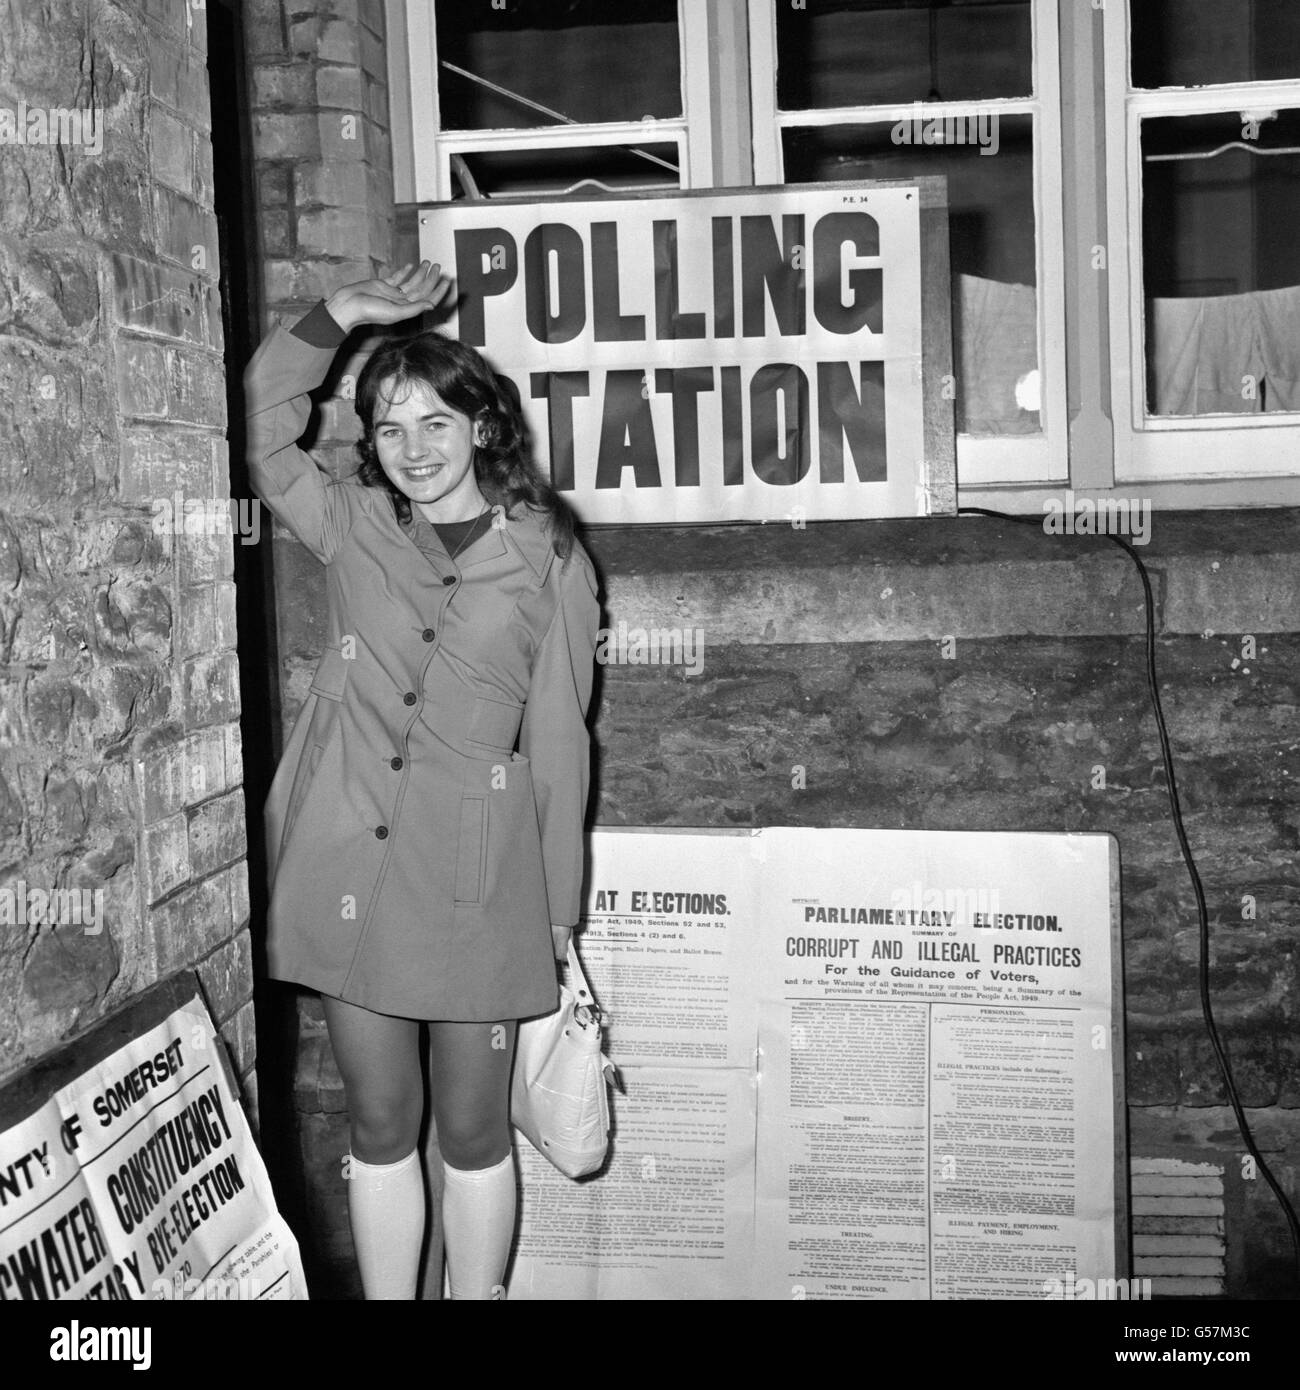 La storia elettorale britannica è stata fatta alle elezioni di Bridgwater il 12 marzo 1970. Questa è stata la prima elezione a svolgersi dal momento che l'età minima di voto è stata ridotta da 21 a 18 anni, il 1° gennaio 1970. Un saluto allegro alla storia elettorale britannica da 18 anni tipista Trudy Sellick di North Newton, Somerset, raffigurato alla stazione di voto a North Newton, dove ha votato questa mattina alle 7, quando la stazione ha aperto. Foto Stock